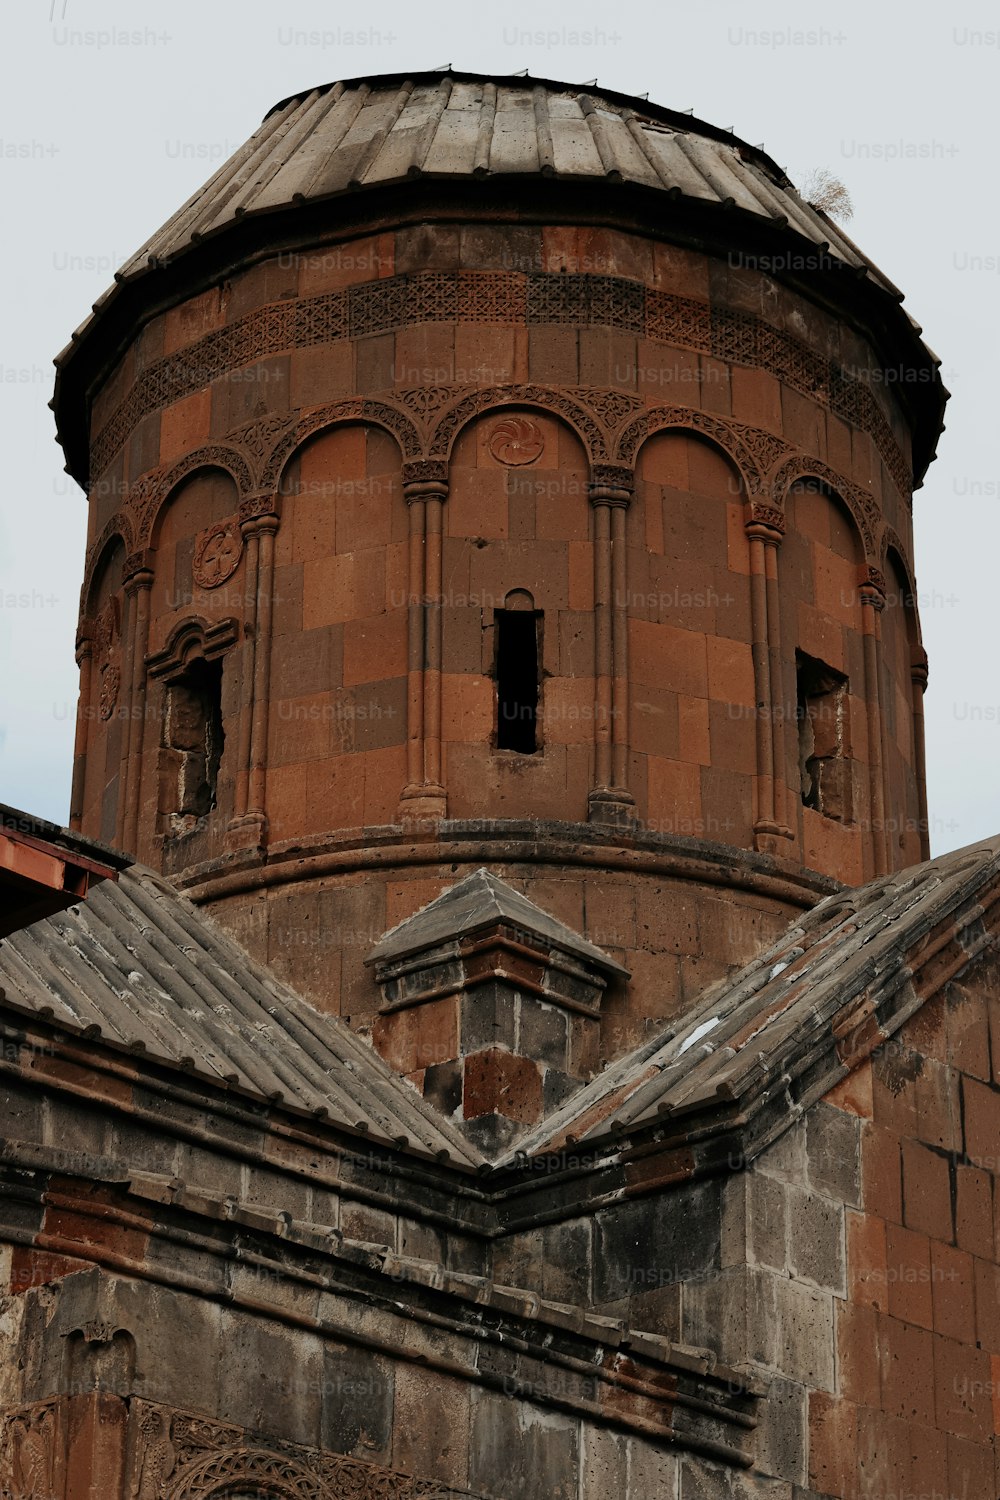 Un vieux bâtiment en briques avec une tour de l’horloge